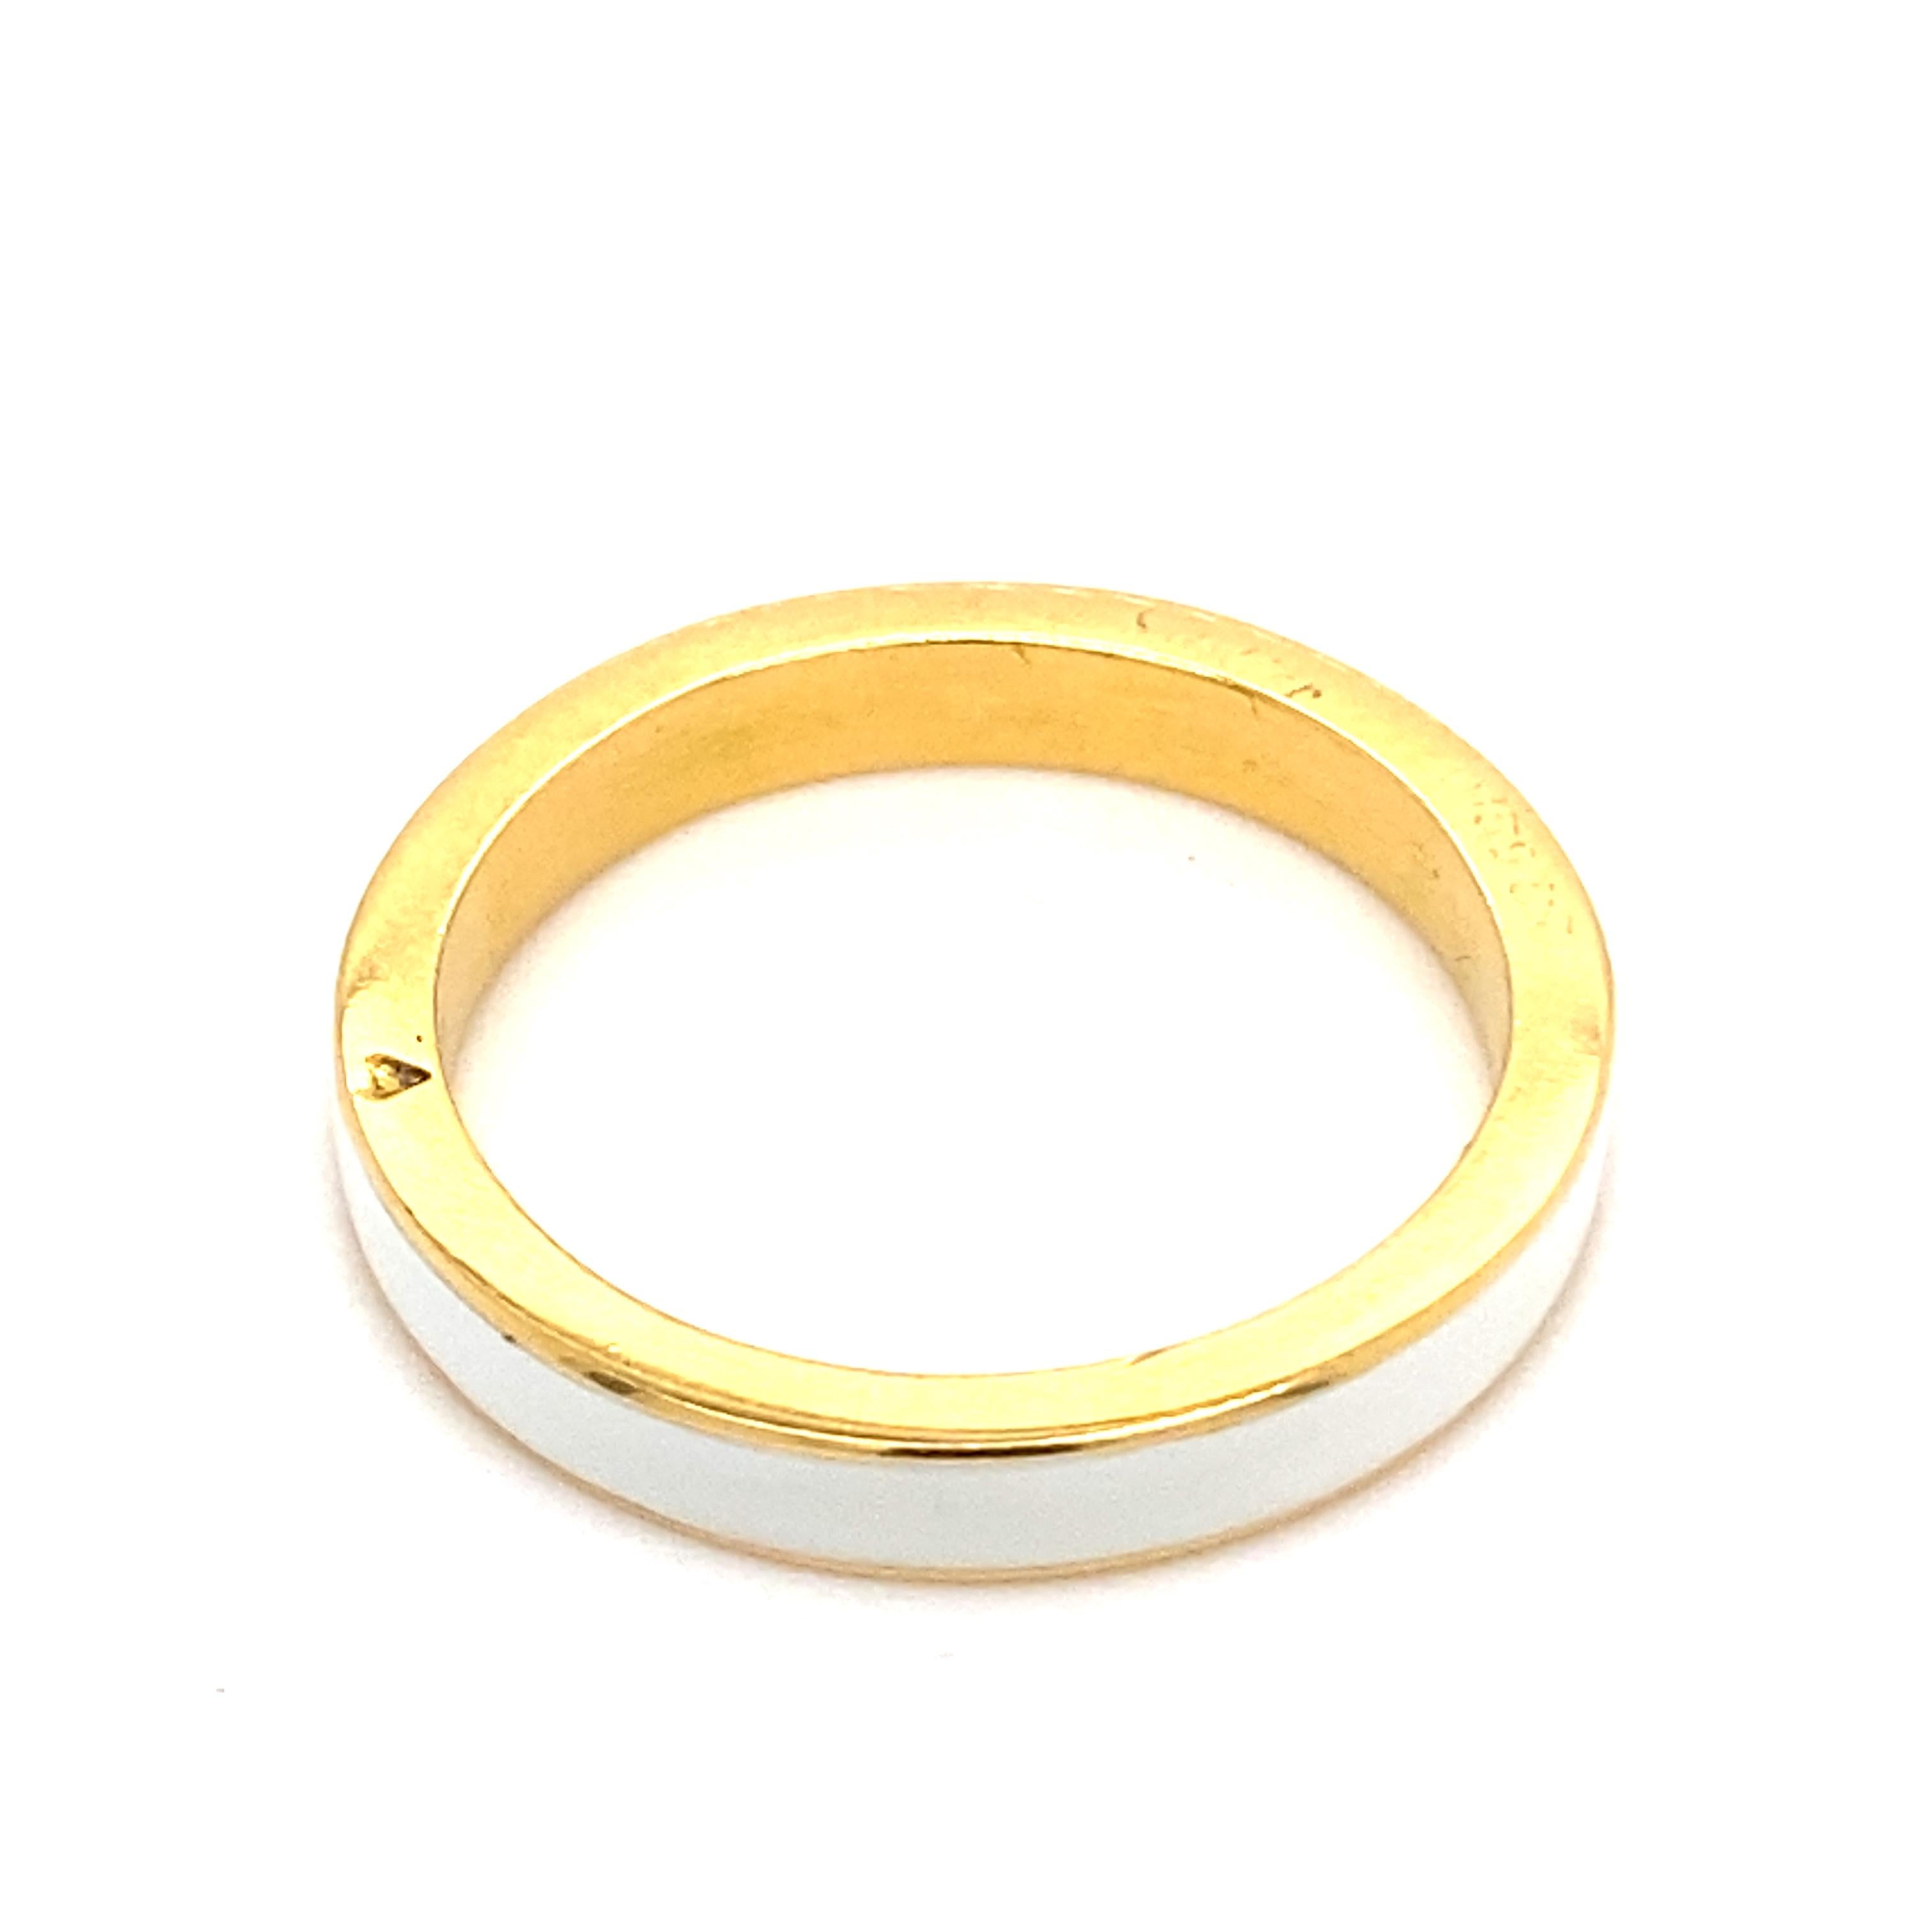 Ein altes Cartier-Armband aus 18 Karat Gelbgold mit weißer Emaille, um 1960.

Ein schlichtes Band aus 18 Karat Gelbgold mit einem Ring aus weißer Guilloche-Emaille in der Mitte.

Ein wunderschöner, eleganter Ring, der allein oder als Teil eines